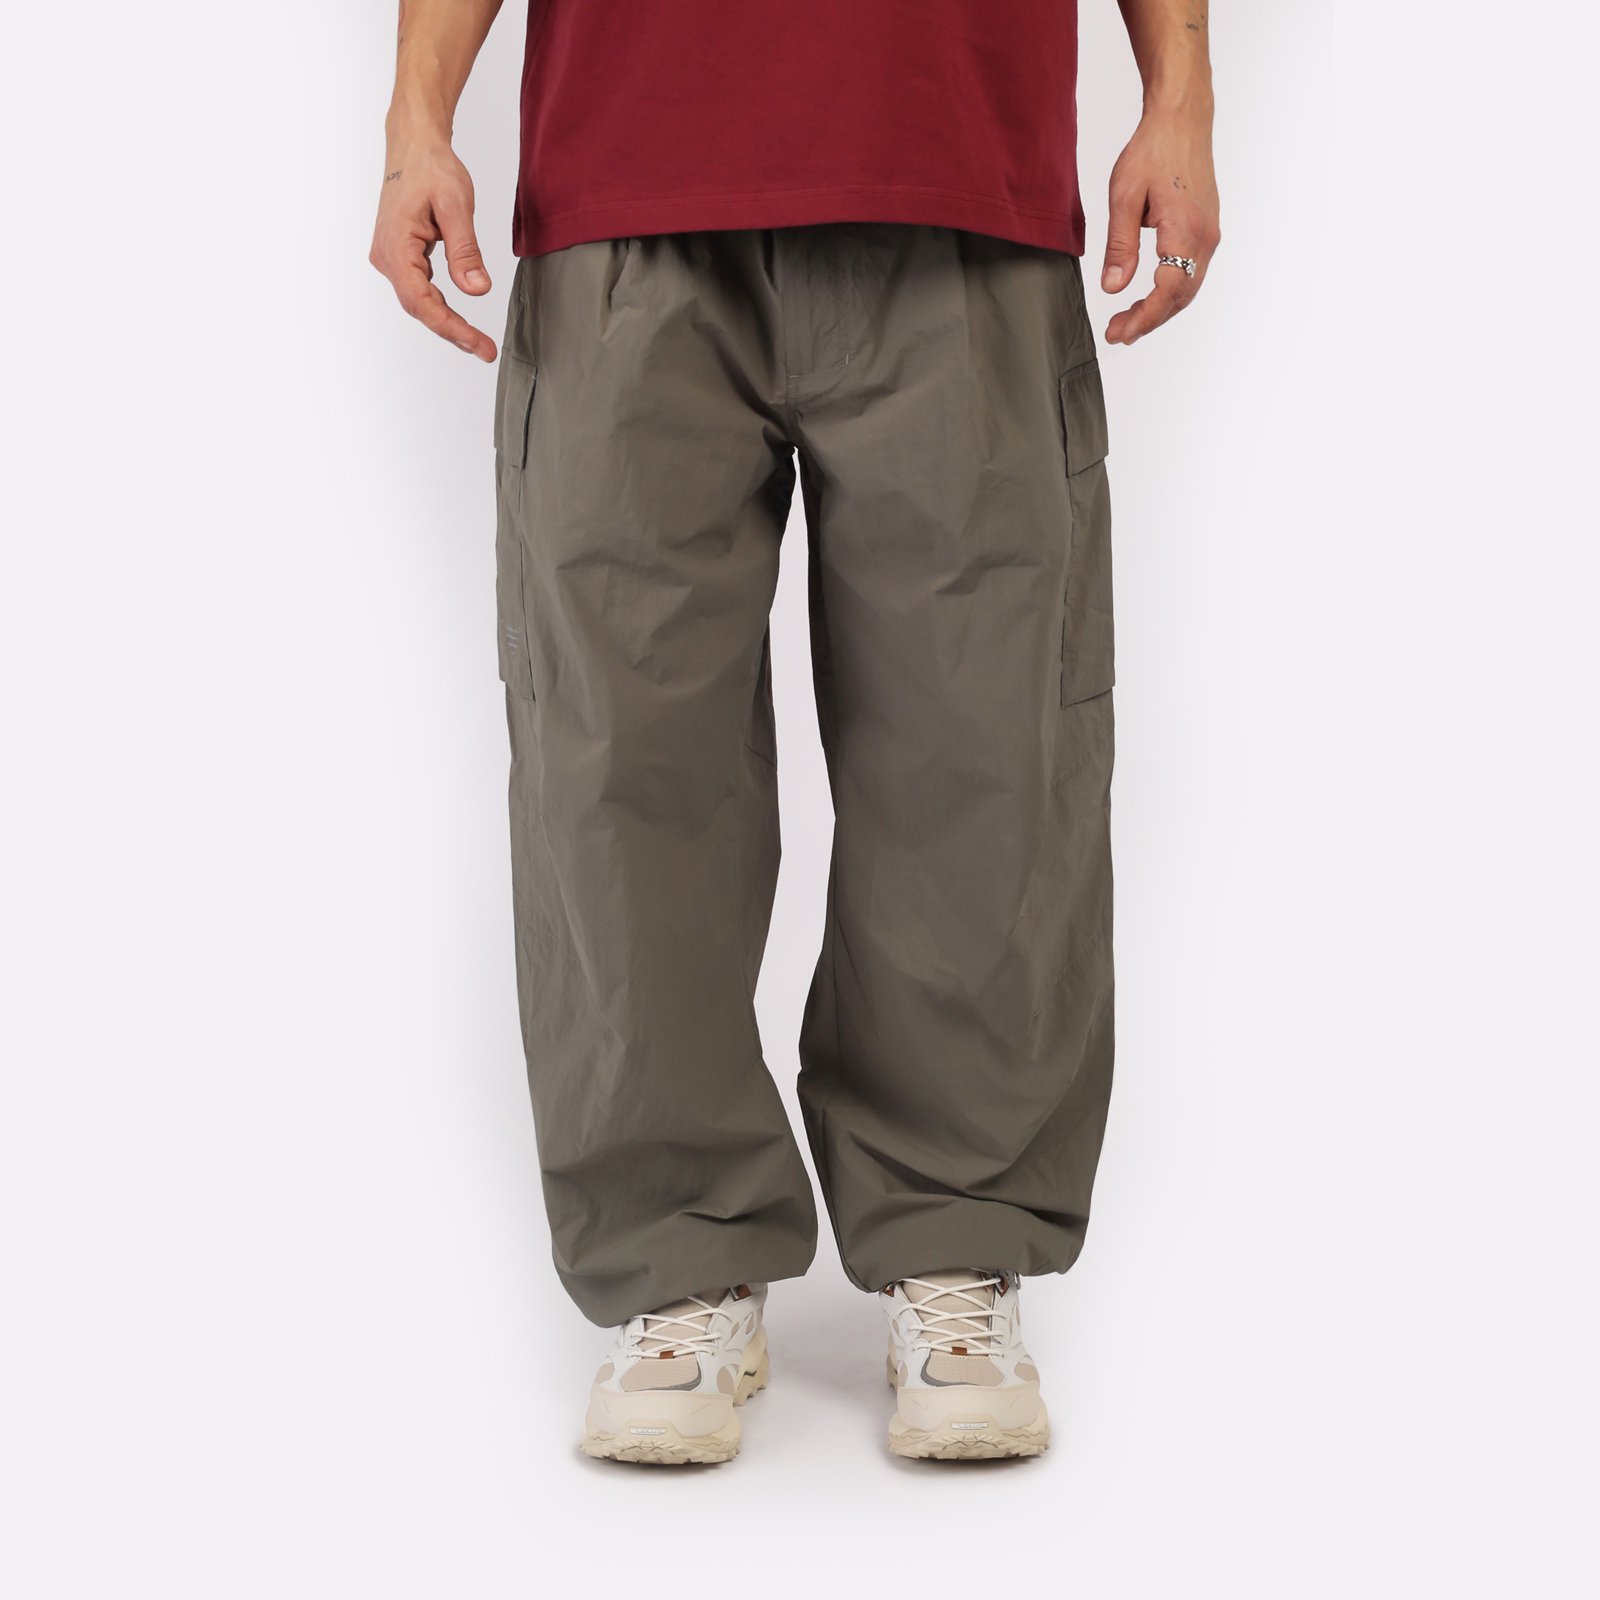 мужские брюки KRAKATAU Rm176-52  (Rm176-52-елово-сер)  - цена, описание, фото 1